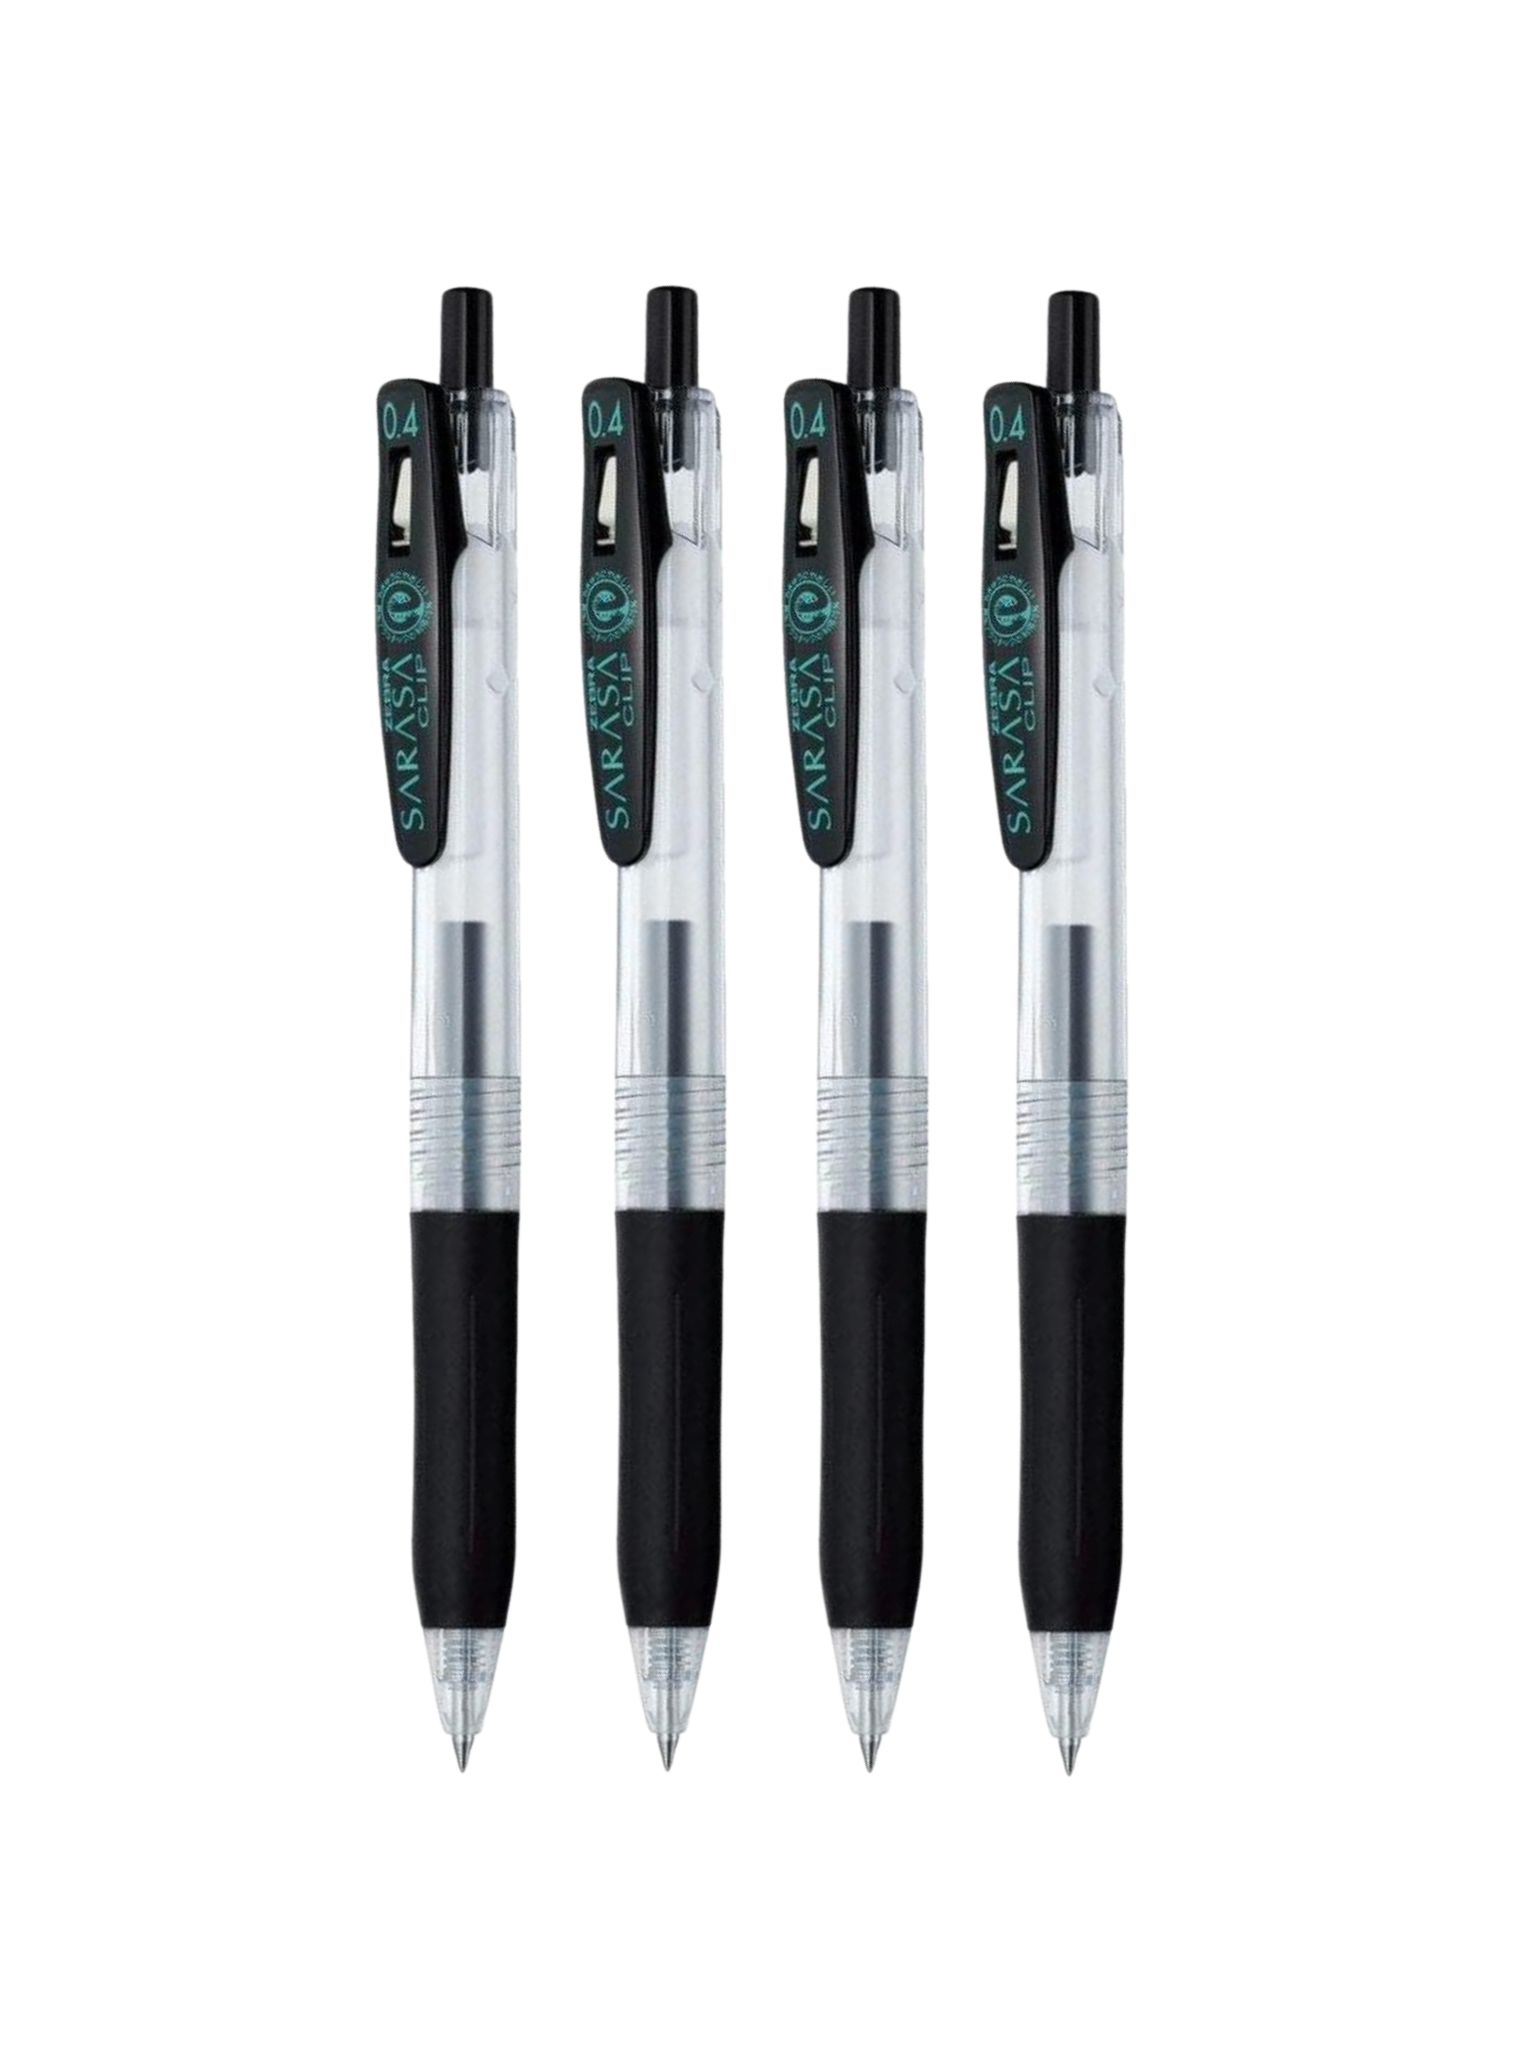 Bolígrafos Zebra Sarasa Clip -Negro 0.4 mm - Set de 4 – Karza Colors